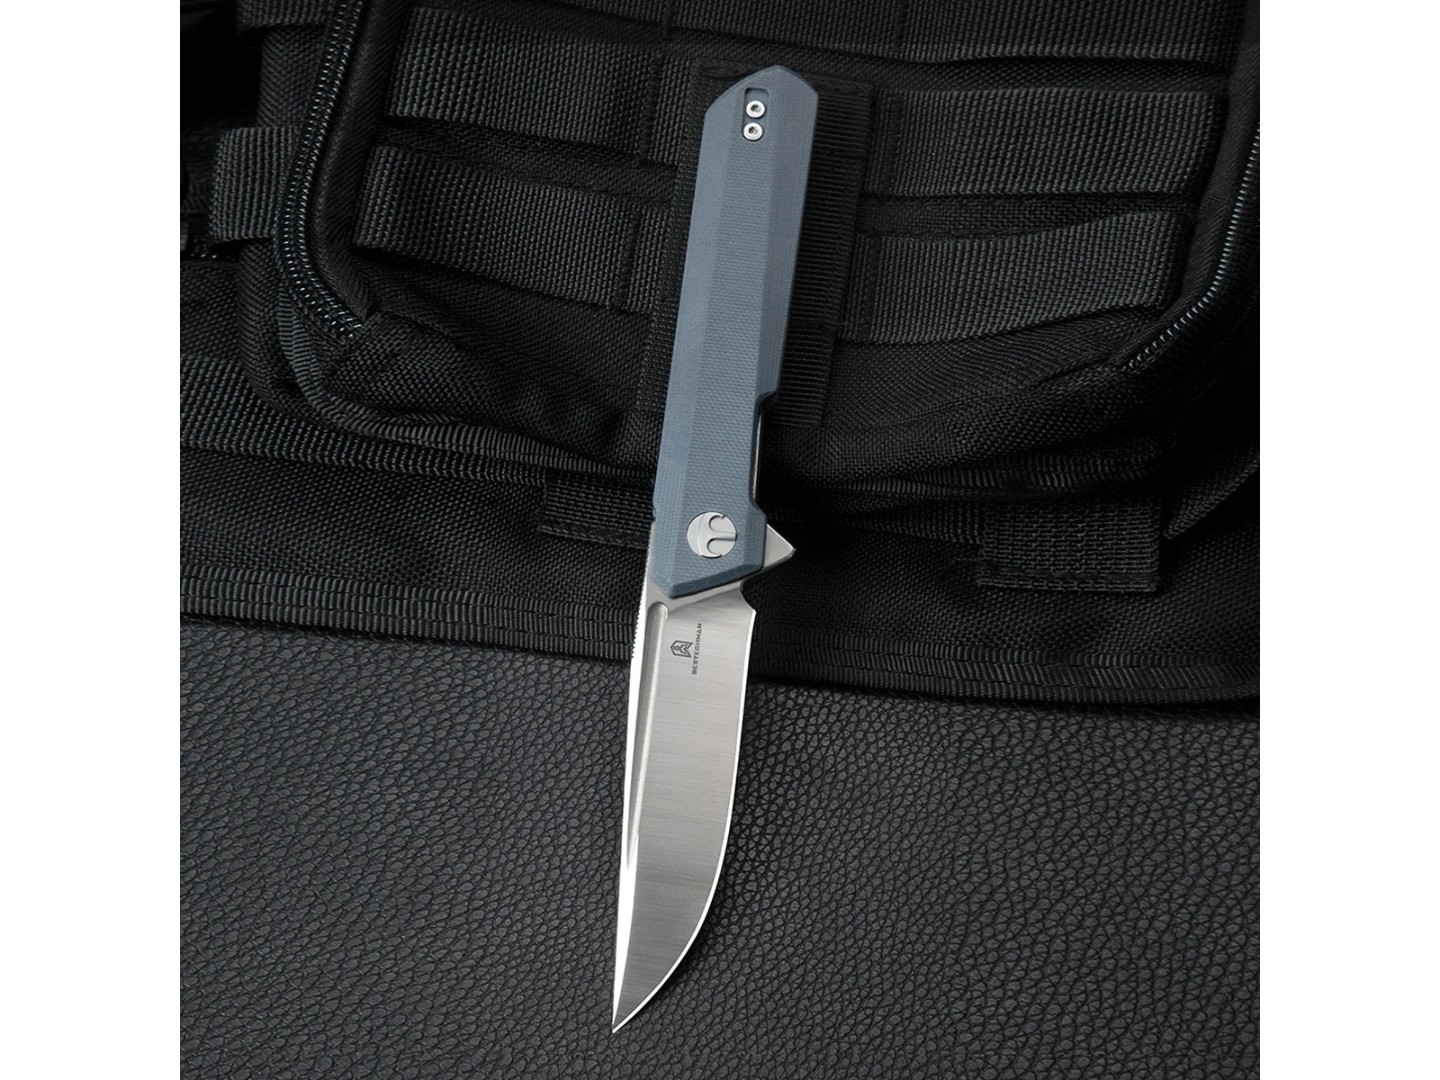 Нож Bestechman Dundee BMK01C сталь D2, рукоять G10 grey